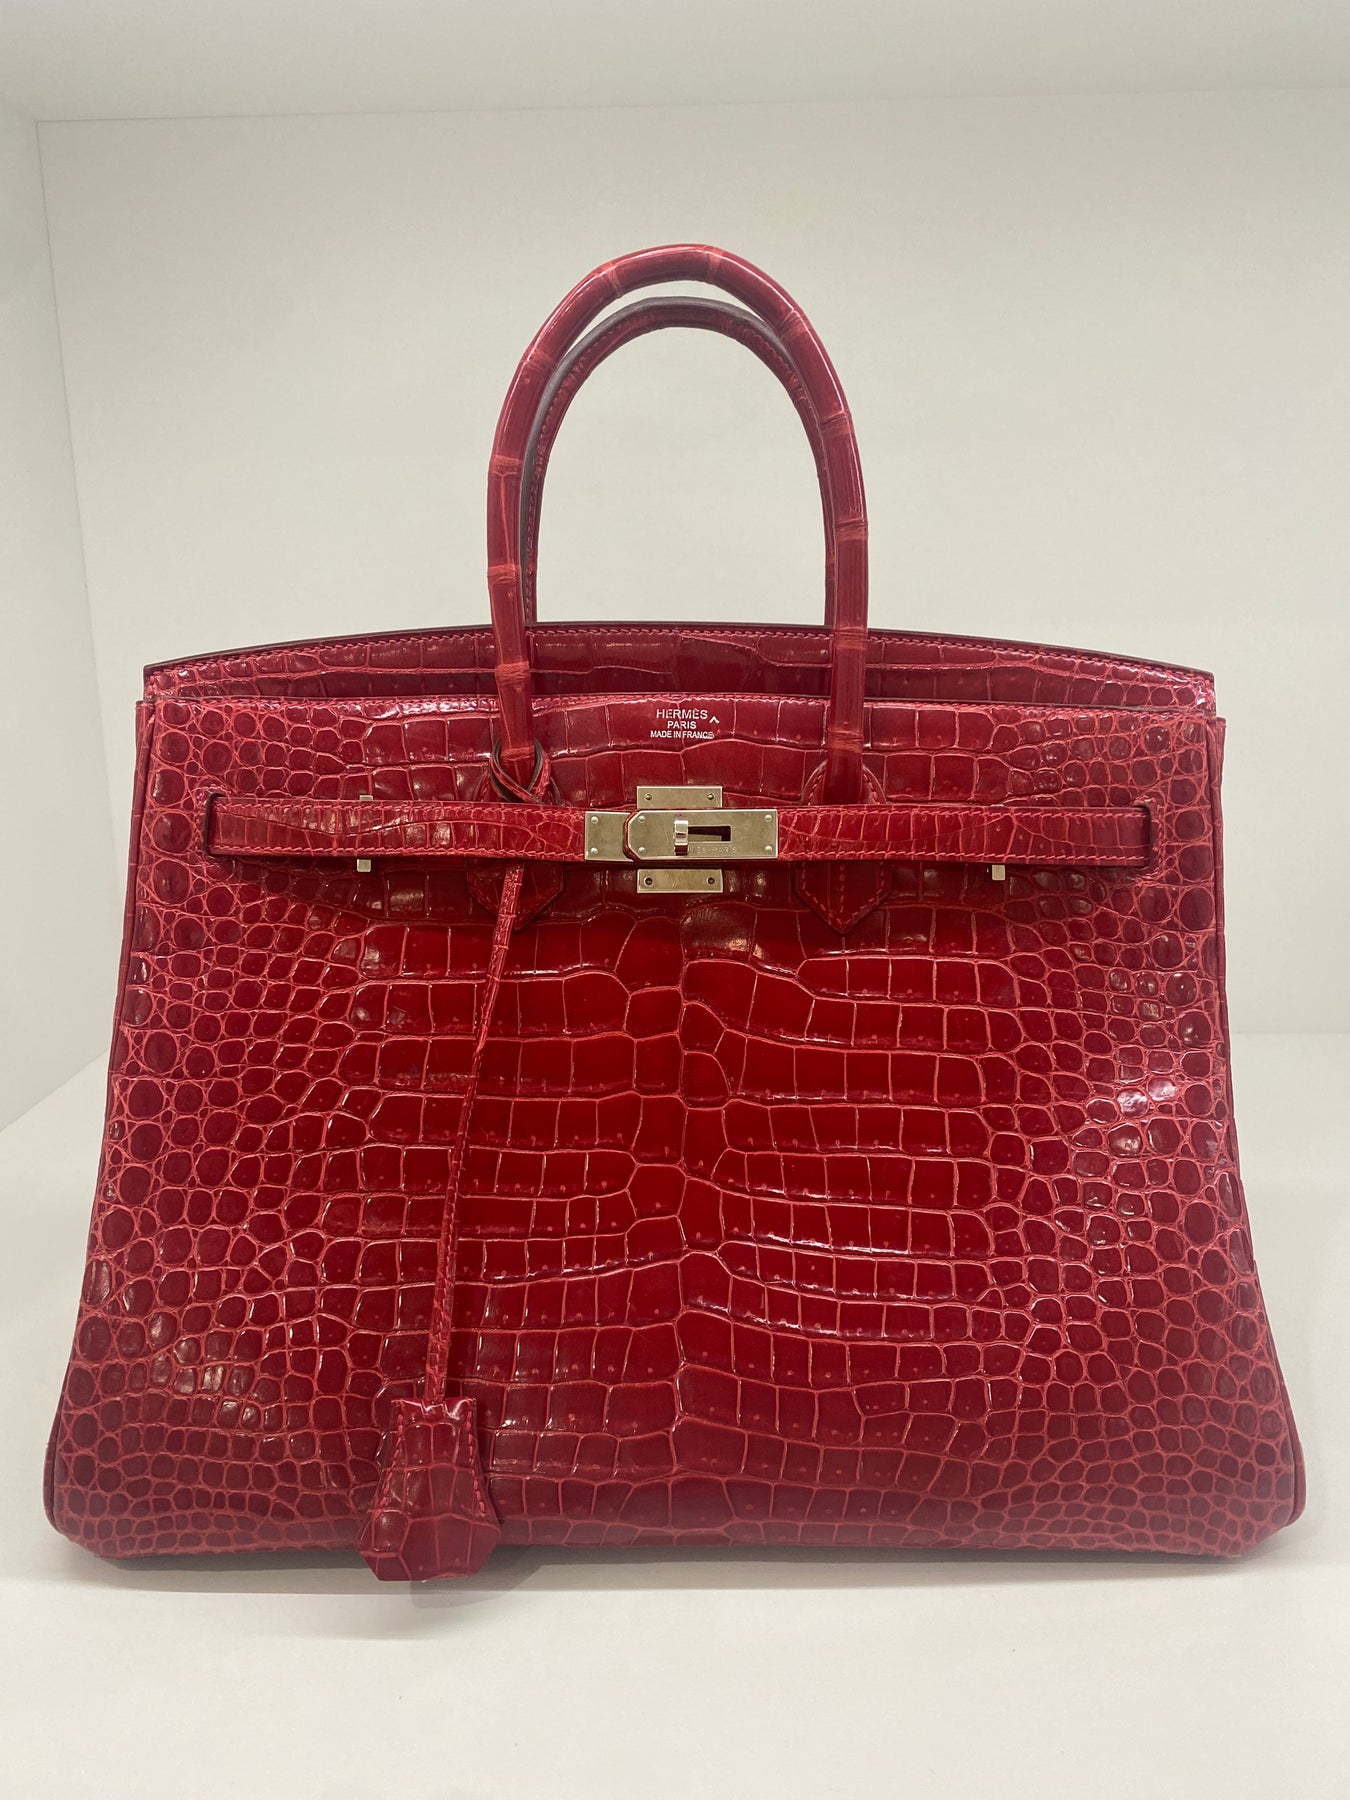 Hermès Red Crocodile Bag Price Store | website.jkuat.ac.ke